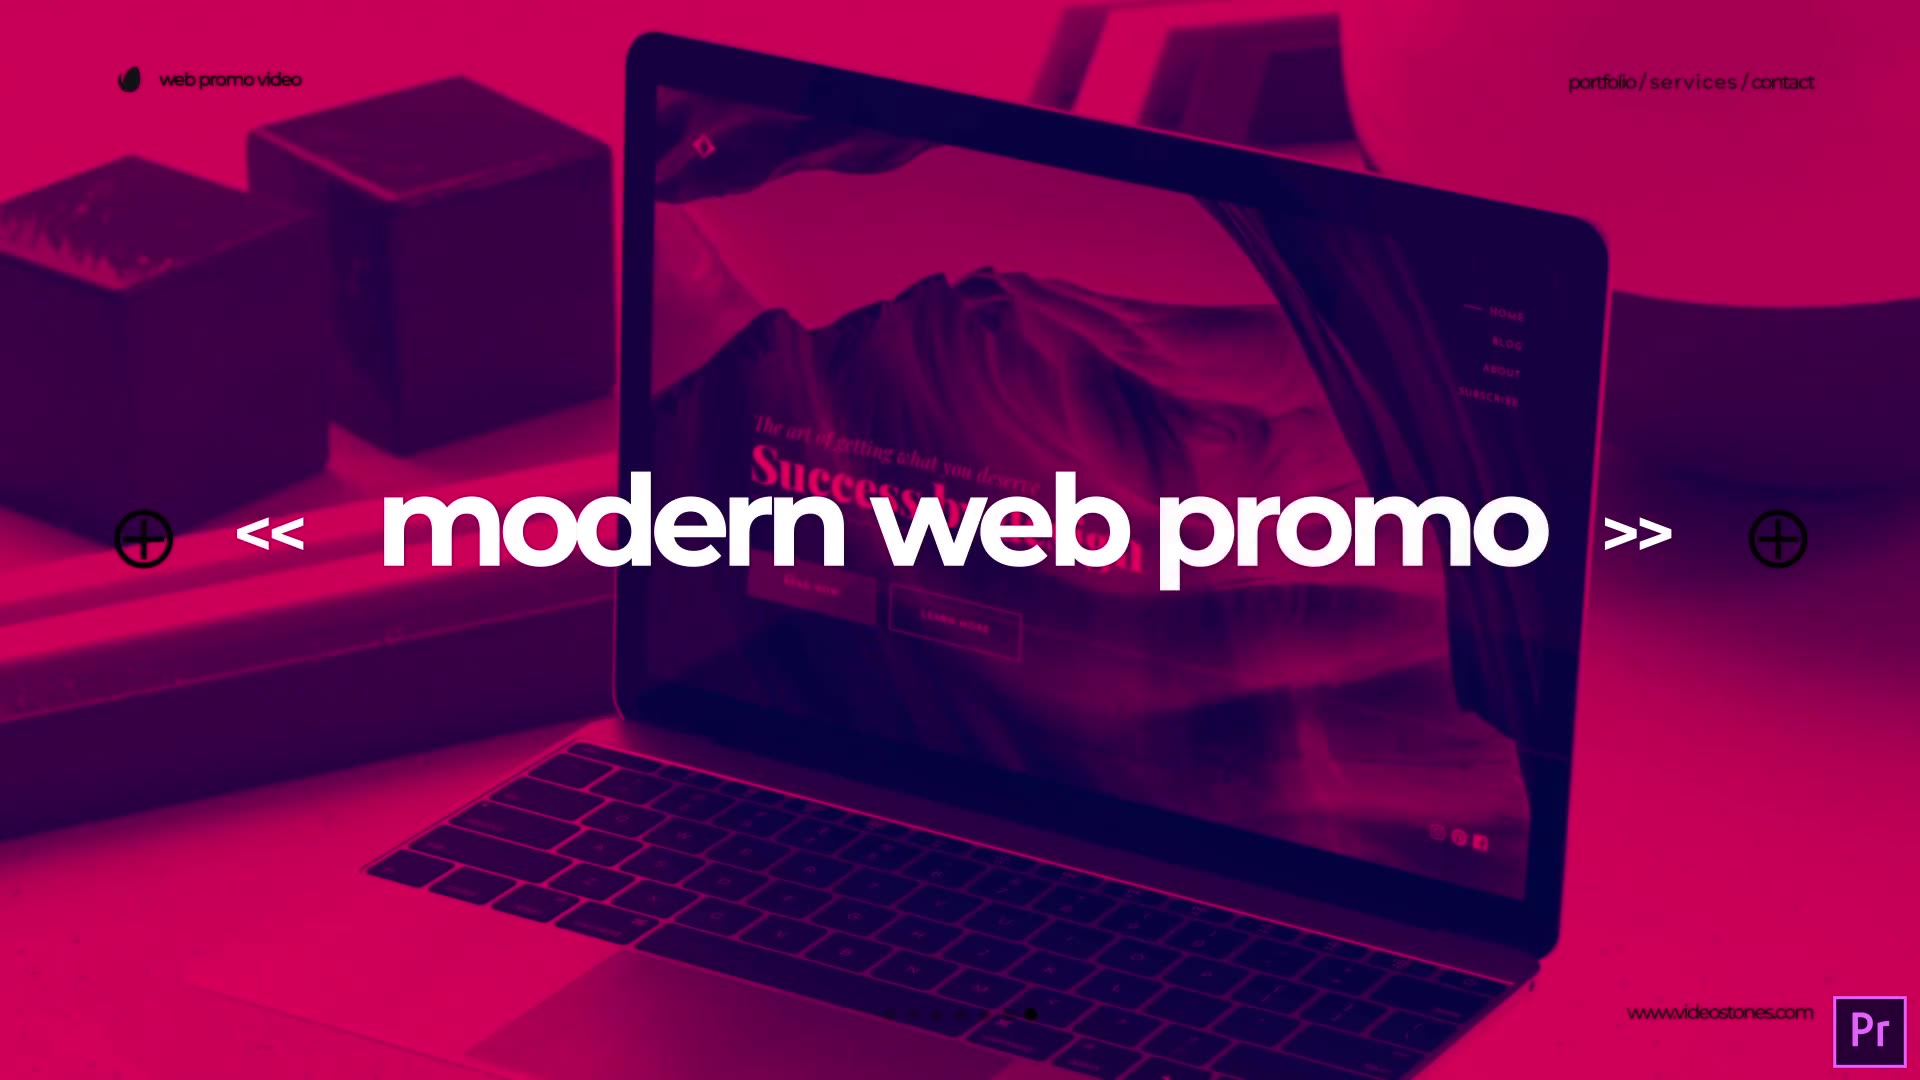 Modern Website Promo Premiere Pro Videohive 33961741 Premiere Pro Image 9